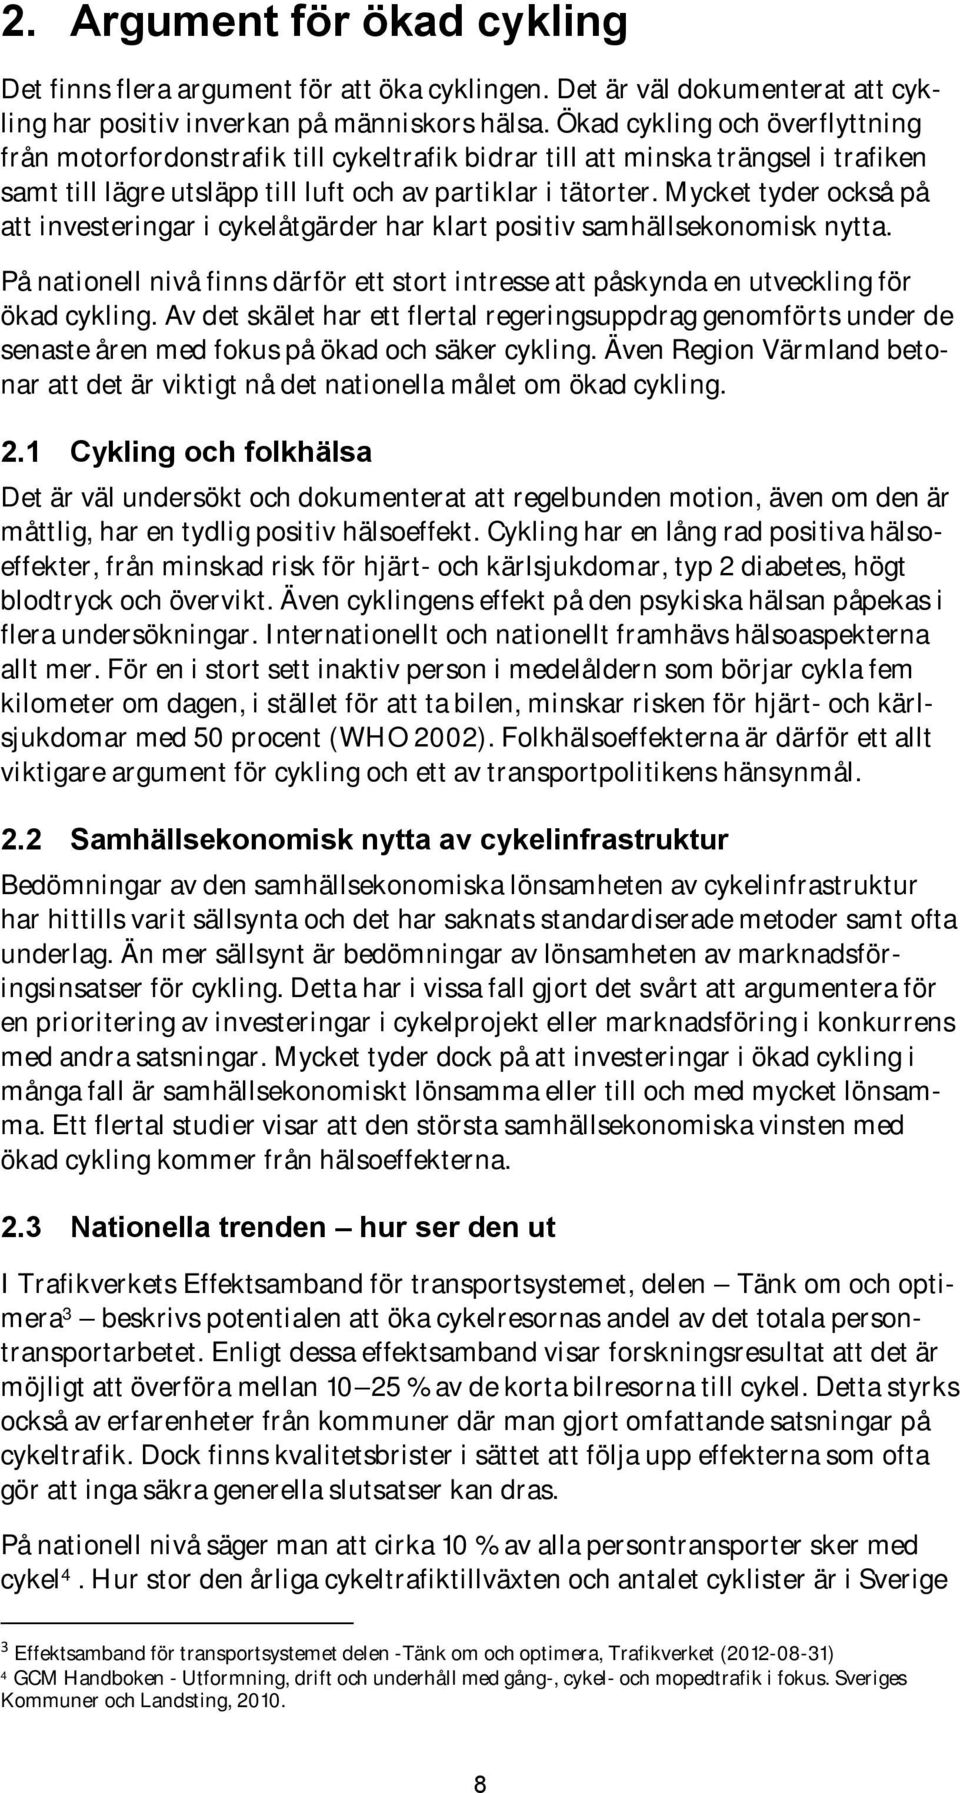 Mycket tyder också på att investeringar i cykelåtgärder har klart positiv samhällsekonomisk nytta. På nationell nivå finns därför ett stort intresse att påskynda en utveckling för ökad cykling.